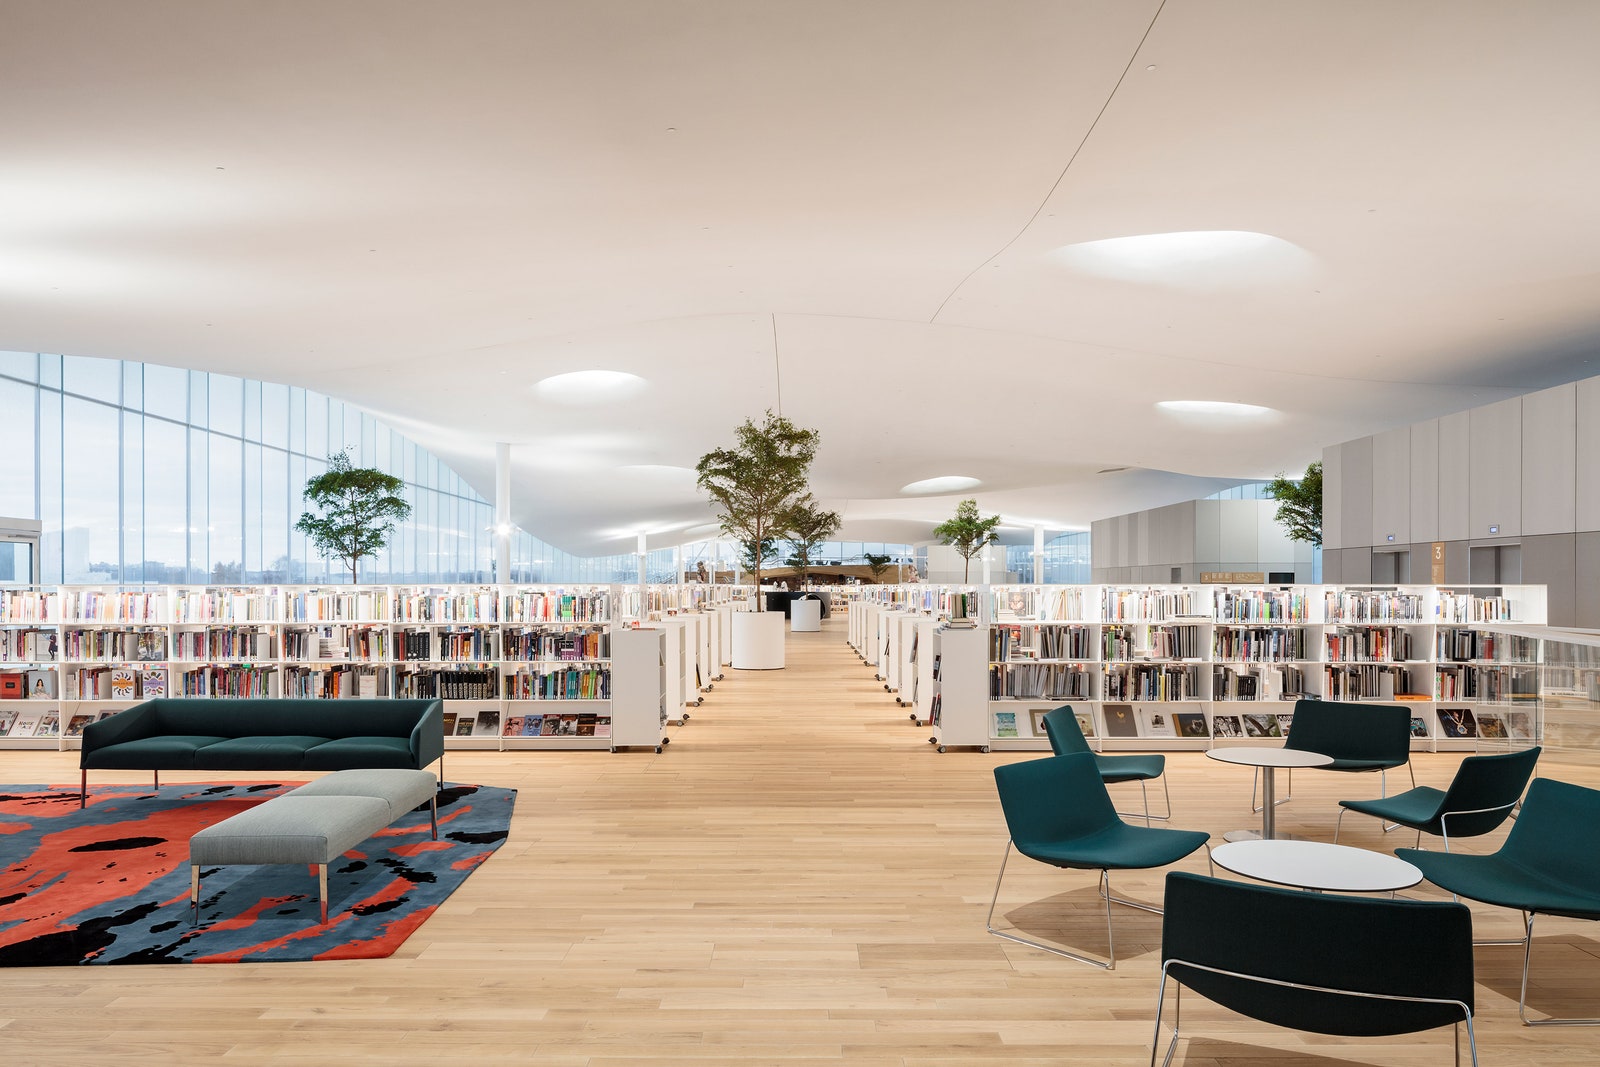 Центральная библиотека Oodi в Хельсинки